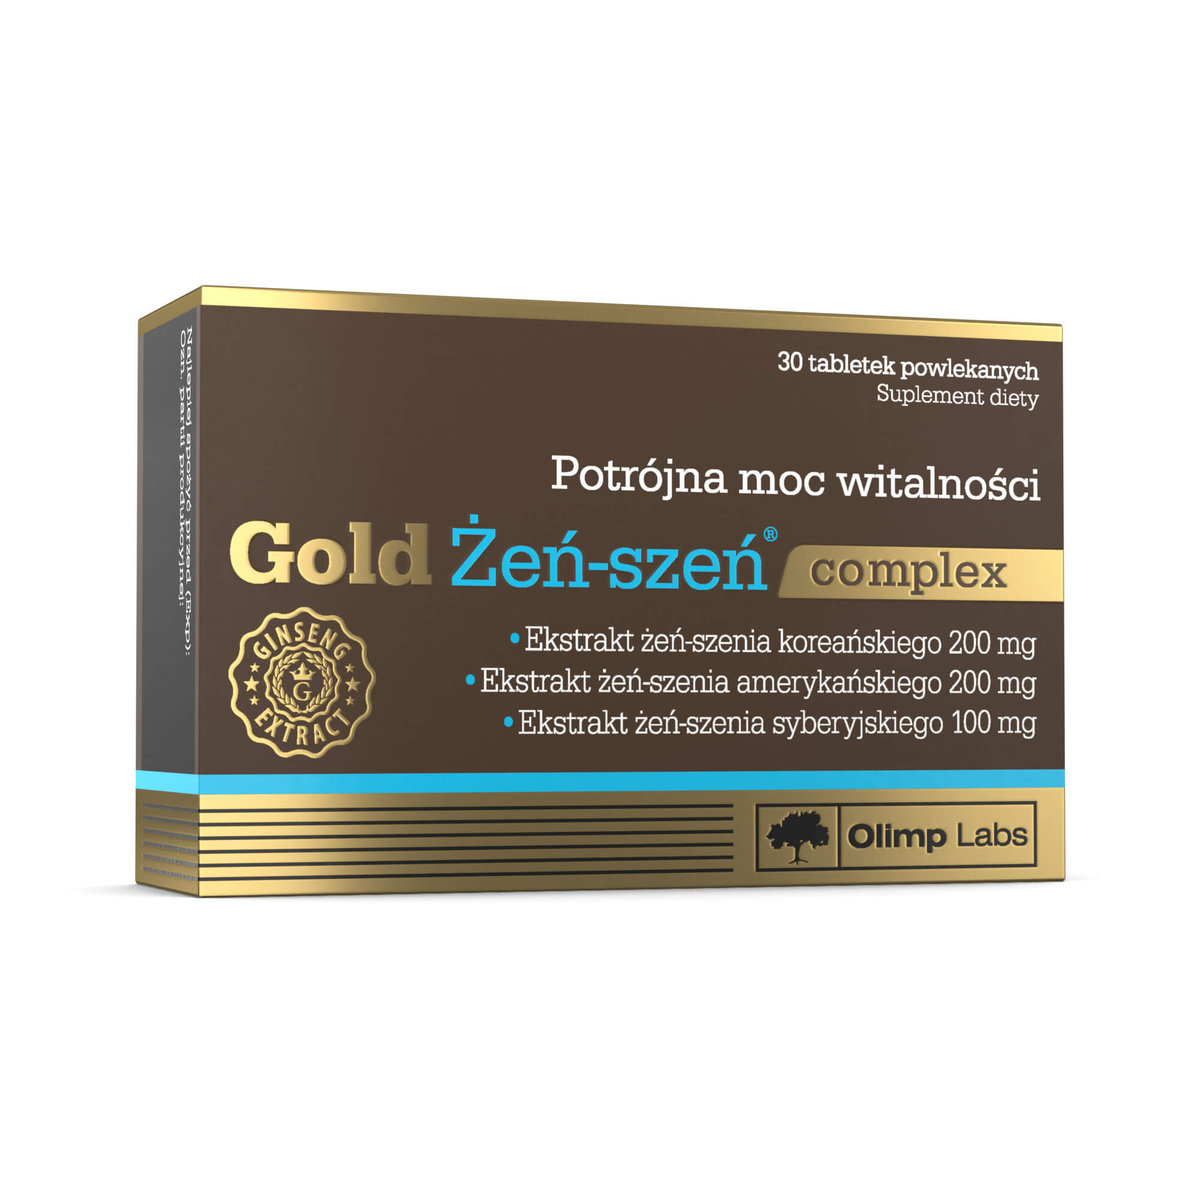 Zdjęcia - Witaminy i składniki mineralne Olimp Suplement diety,  Gold Żeń-szeń complex - 30 Tabletek 